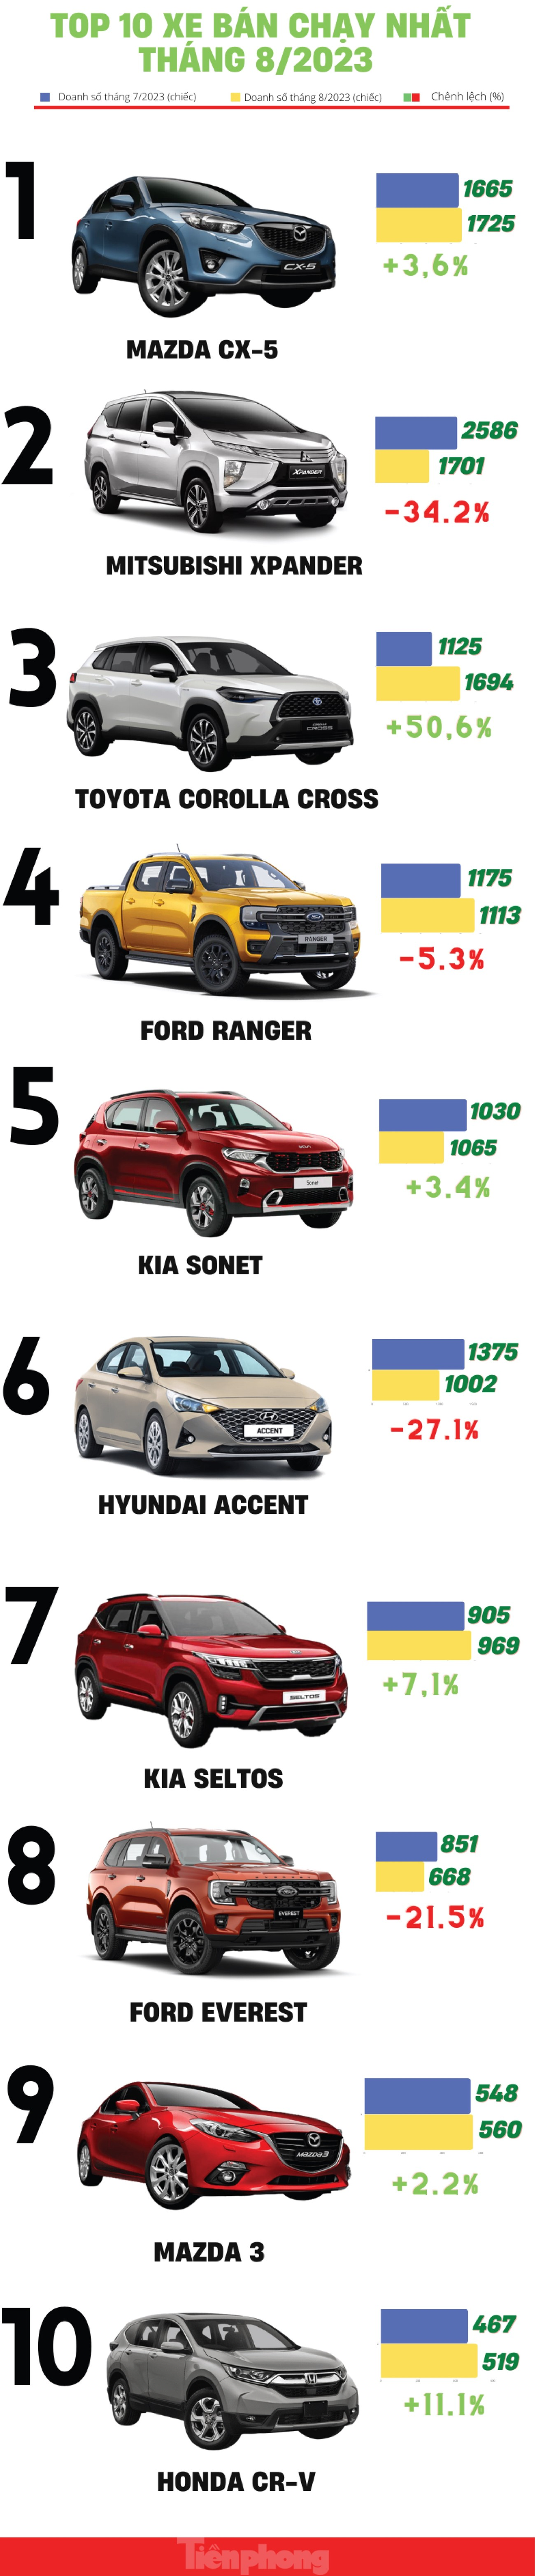 Top 10 ô tô bán chạy nhất thị trường Việt trong tháng 8 ảnh 1